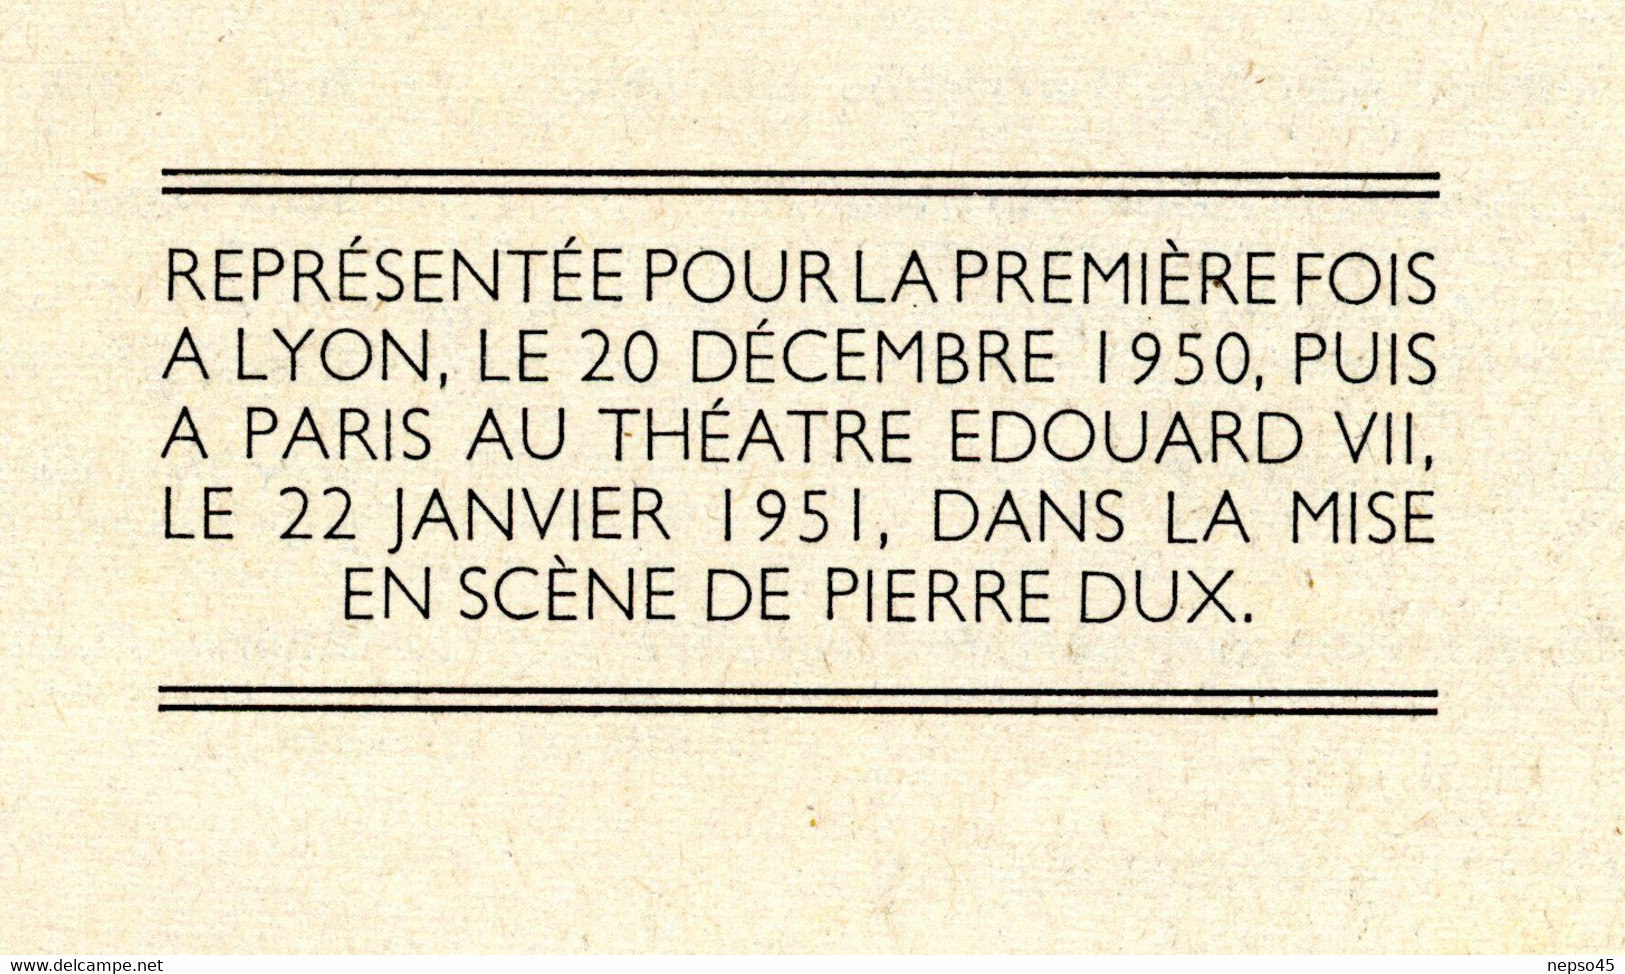 Revue Paris-Théâtre Edouard VII.Pièces l'île heureuse et l'Empereur de Chine de Jean-Pierre Aumont.Texte intégral.